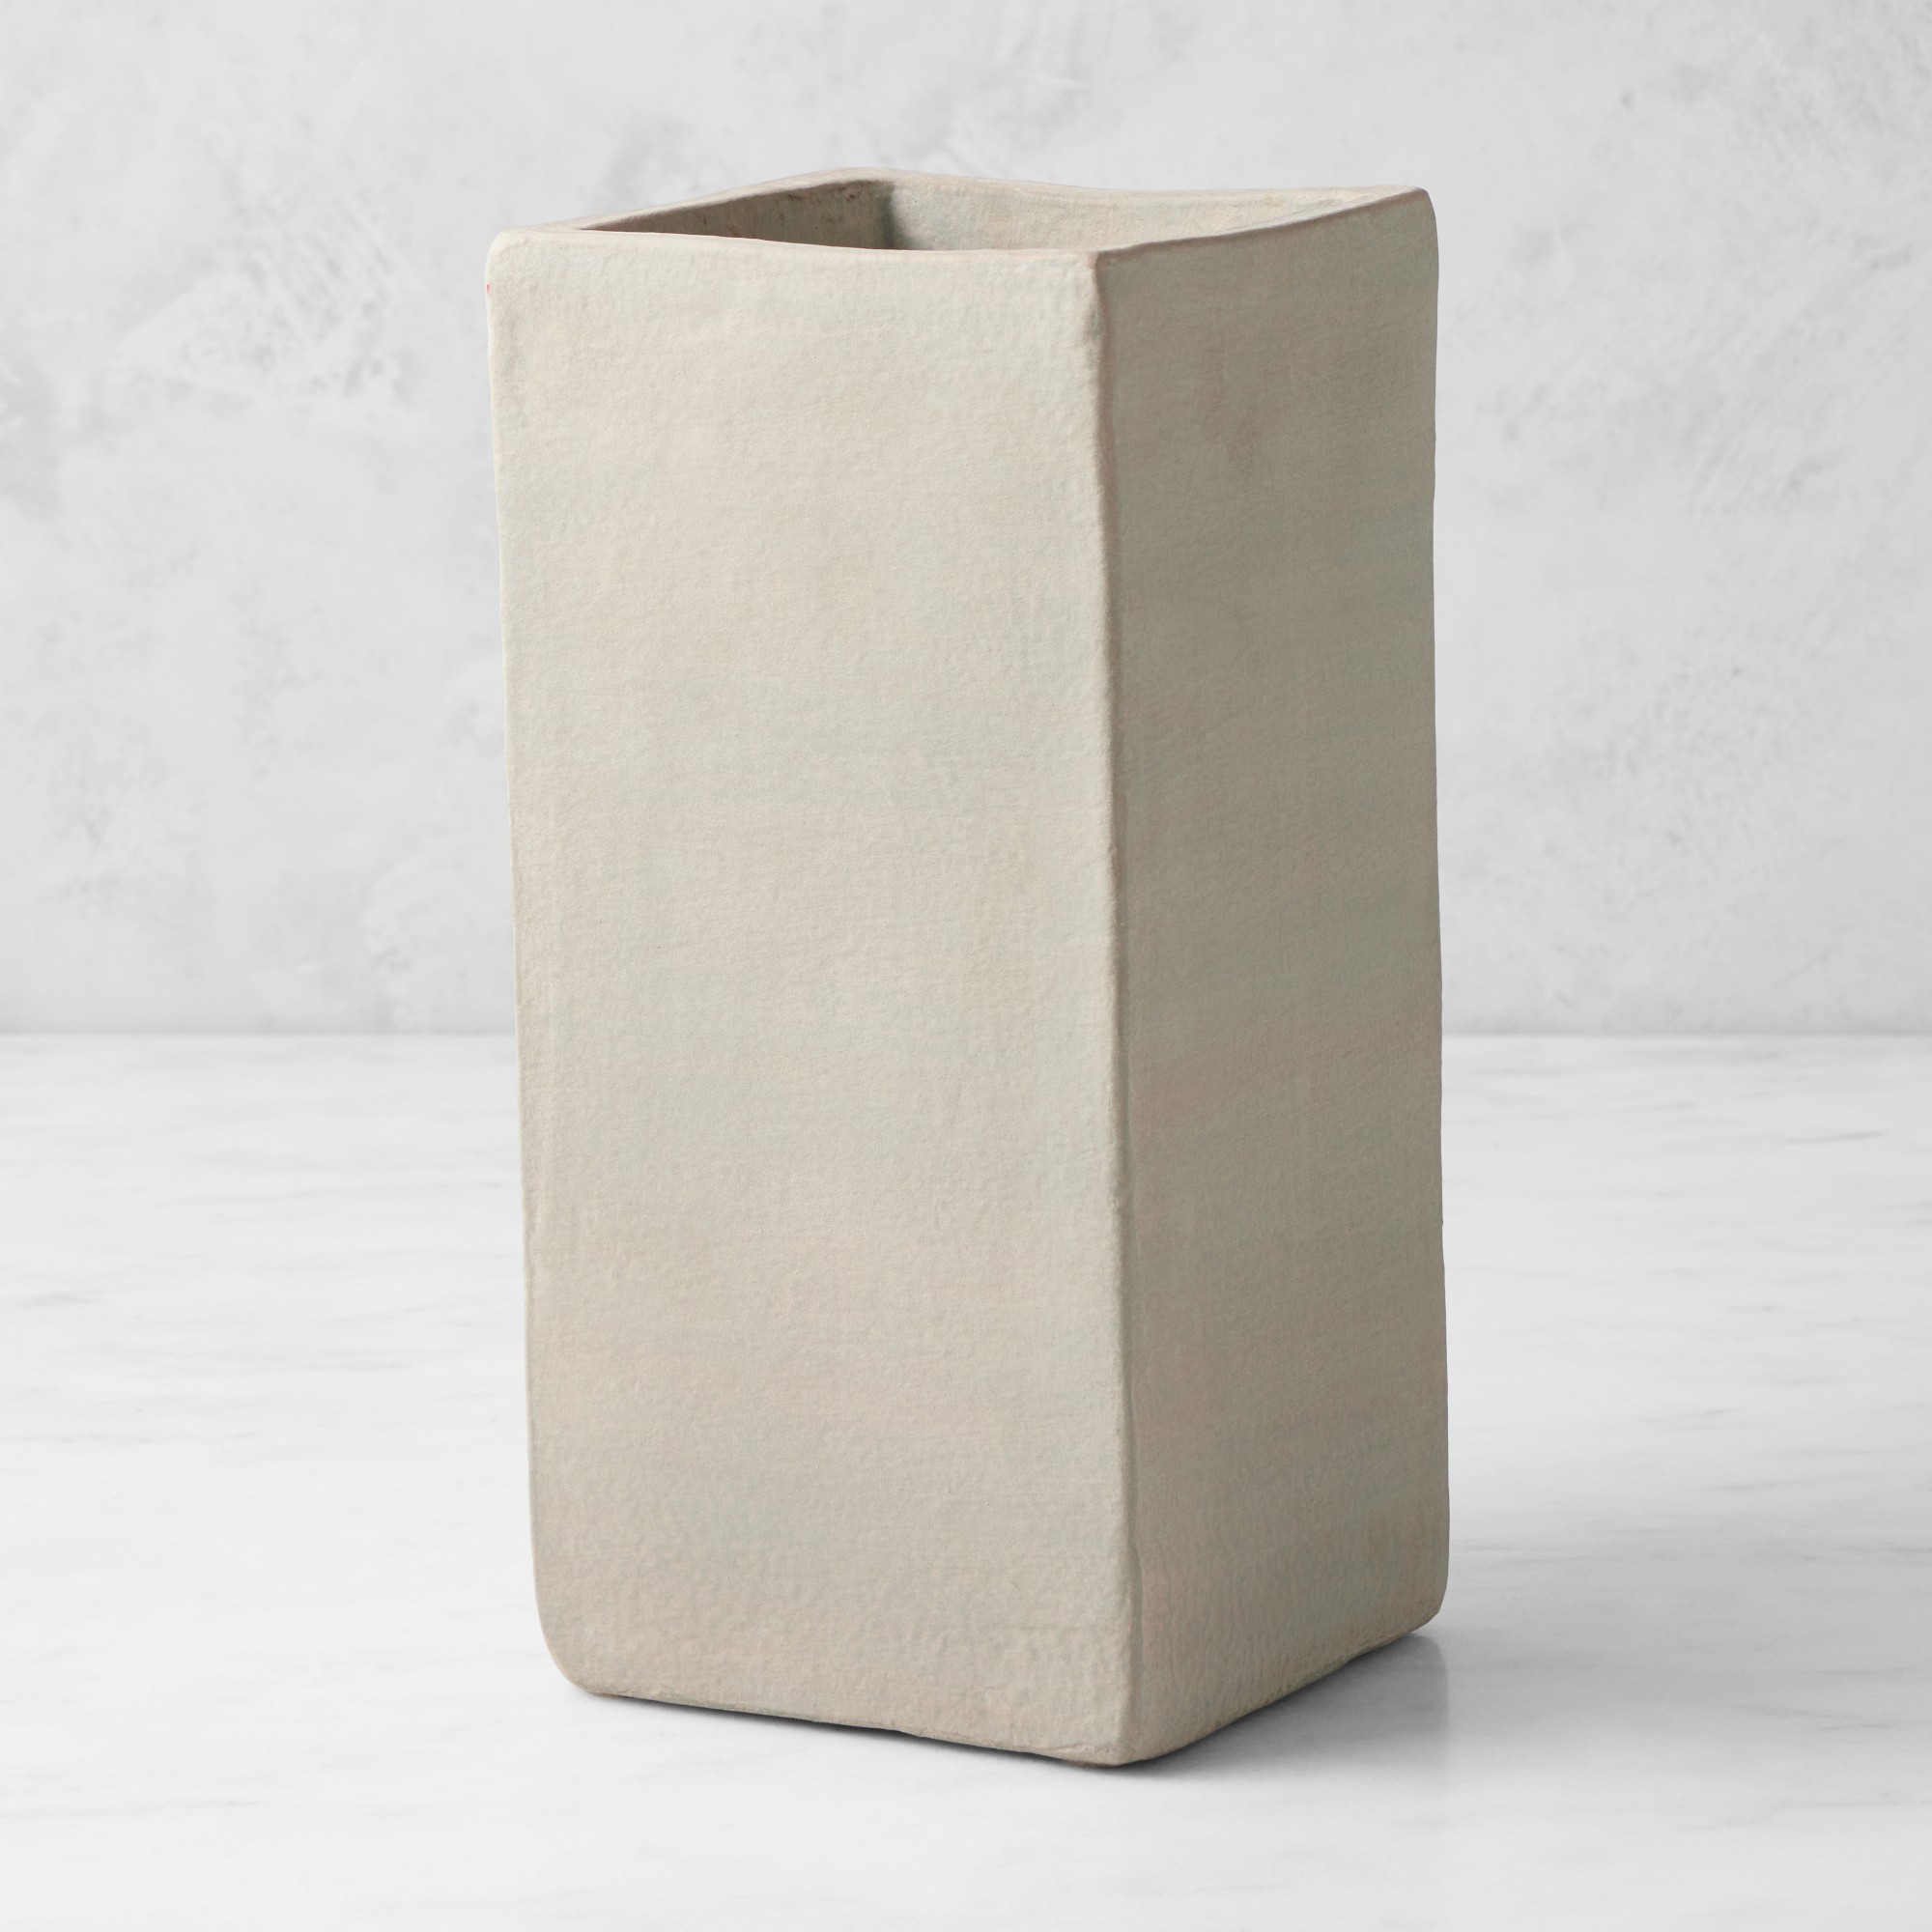 Jeff Leatham Square White Ceramic Vase, 13"